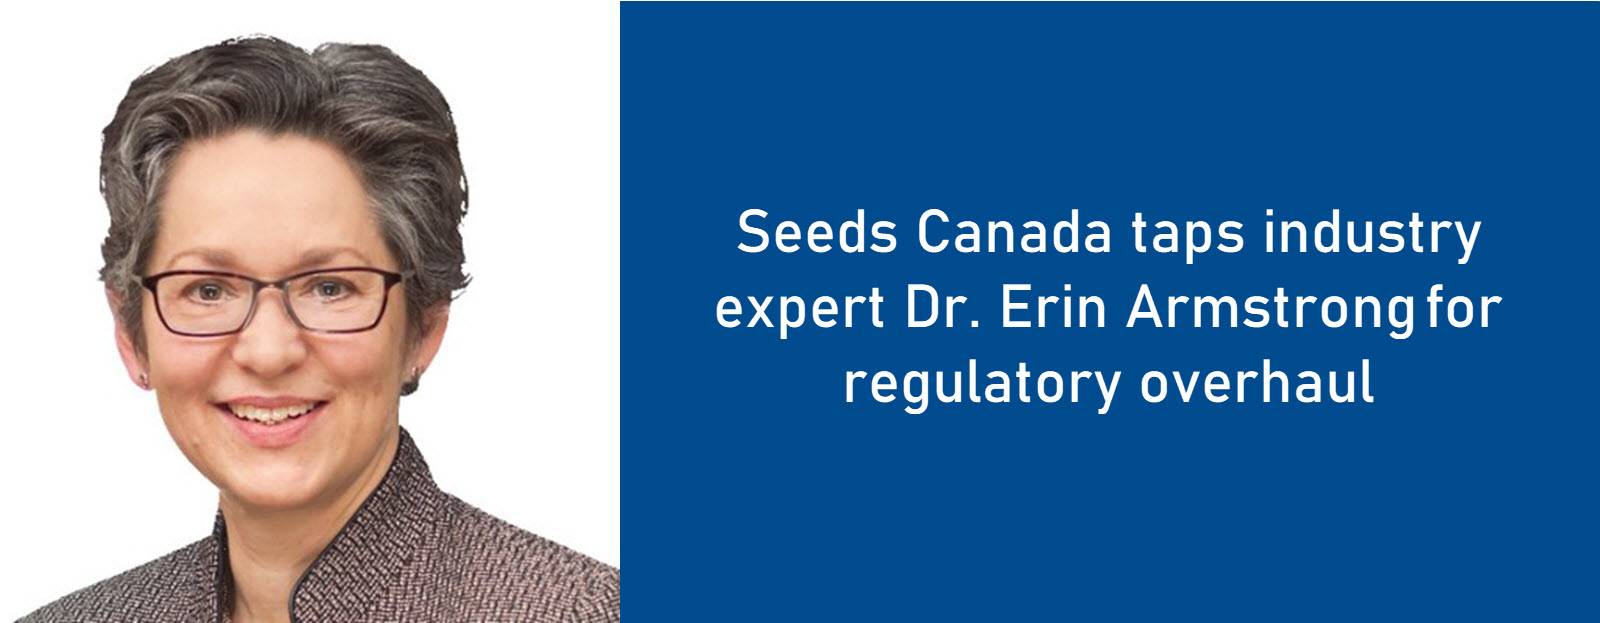 Seeds Canada taps industry expert for regulatory overhaul